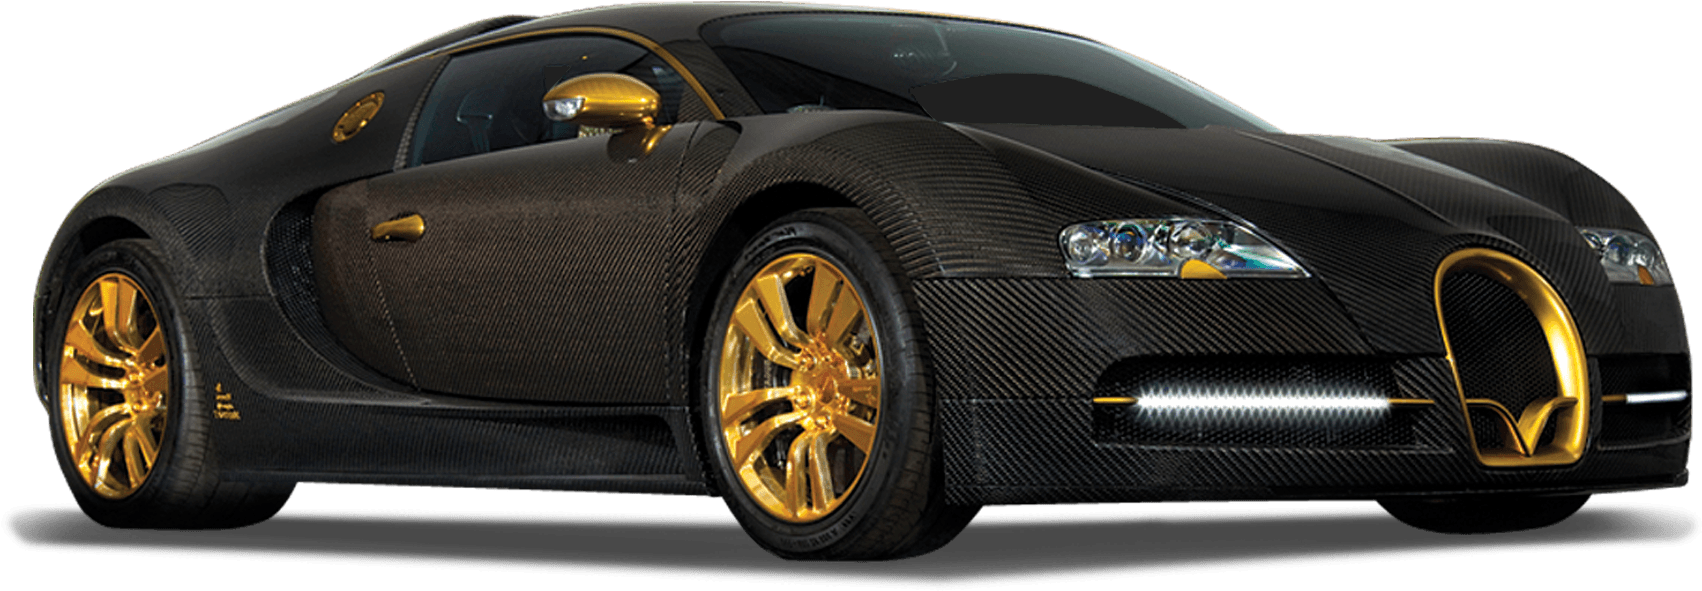 Black Gold Bugatti Veyron Side View PNG